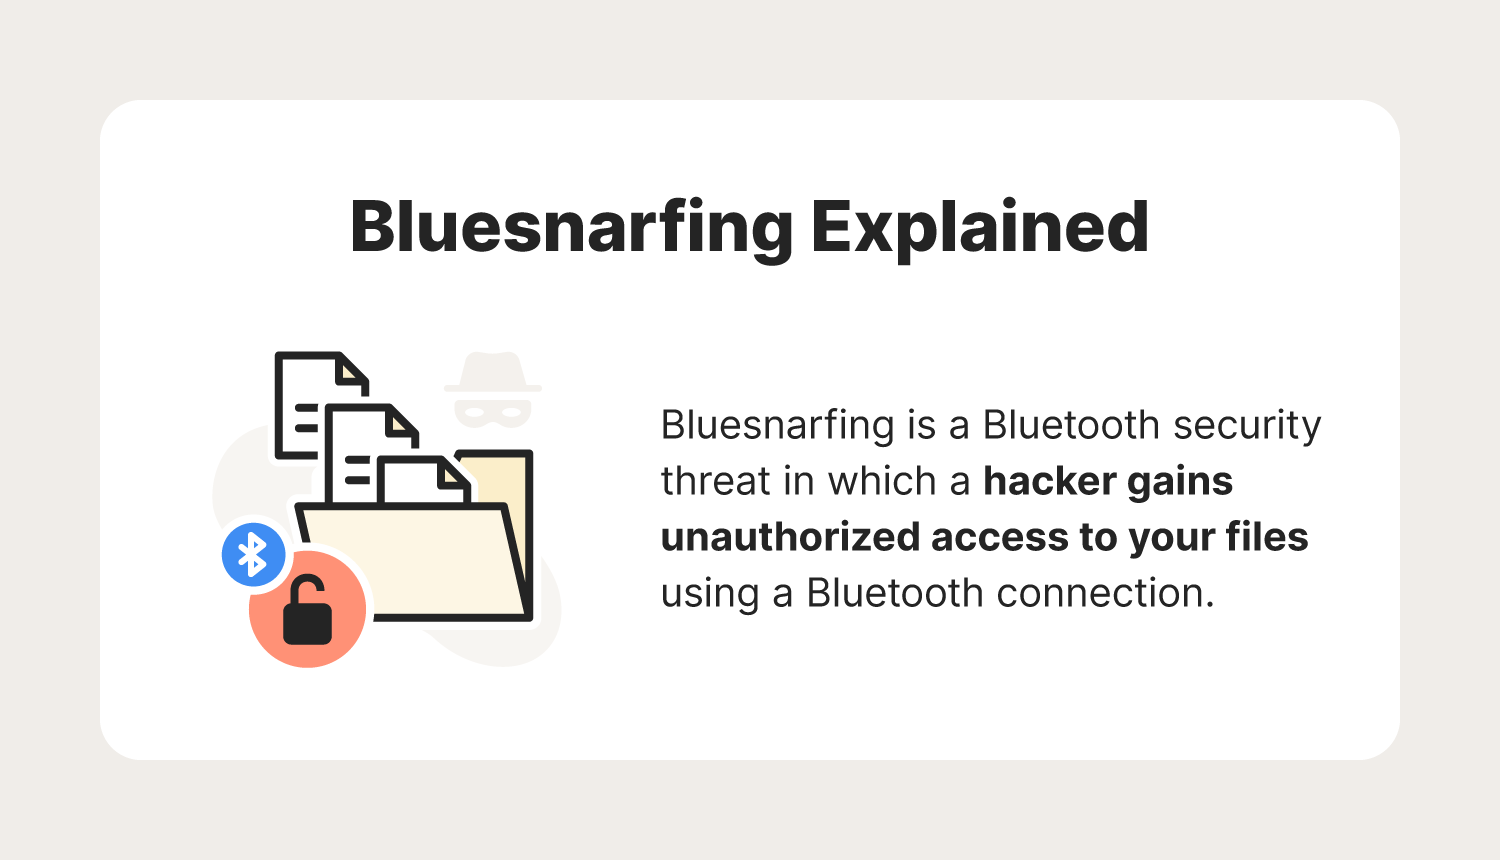 Bluesnarfing explained